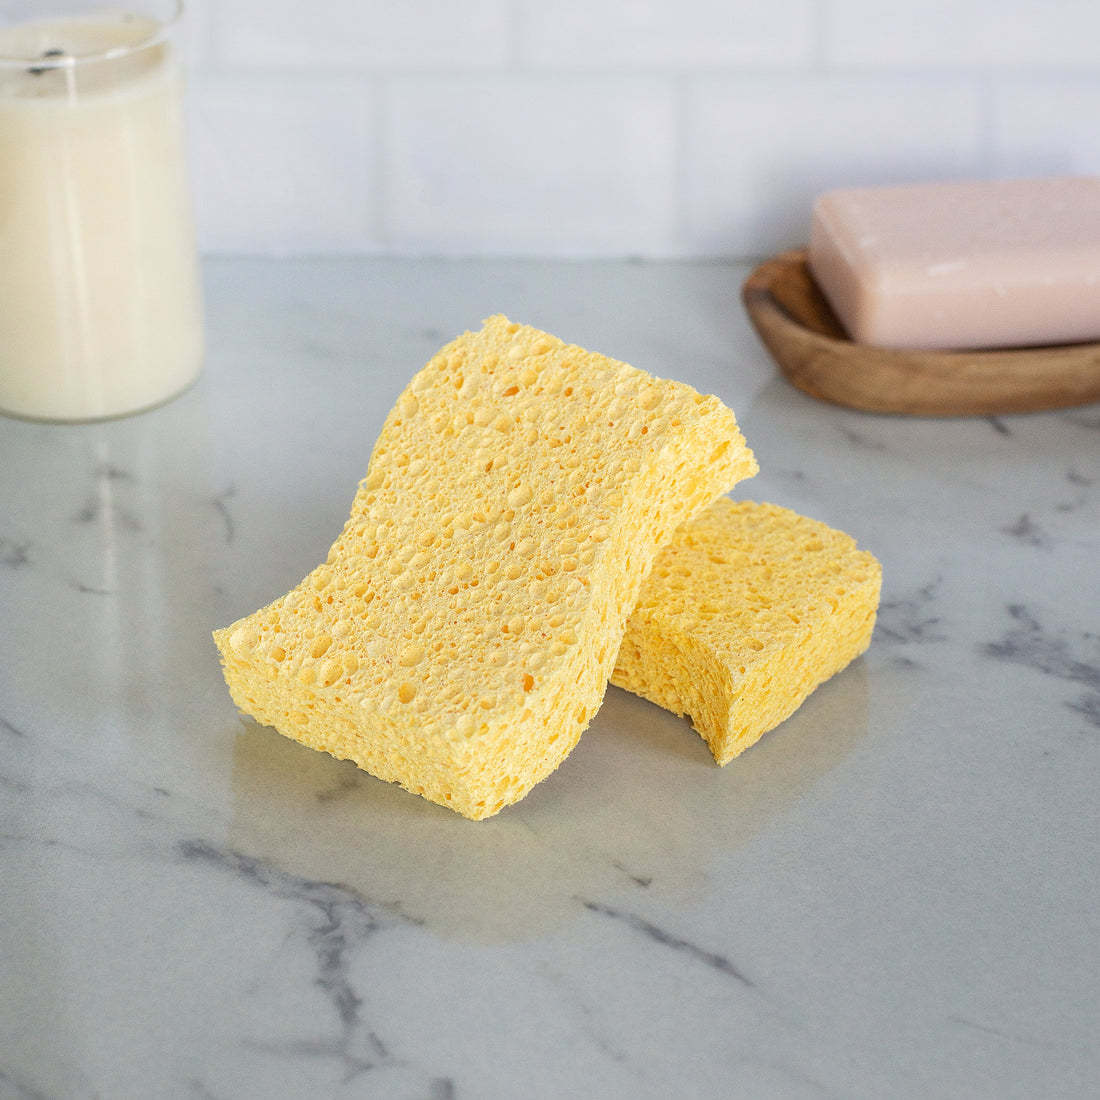 6 Top Benefits of Biodegradable Sponges